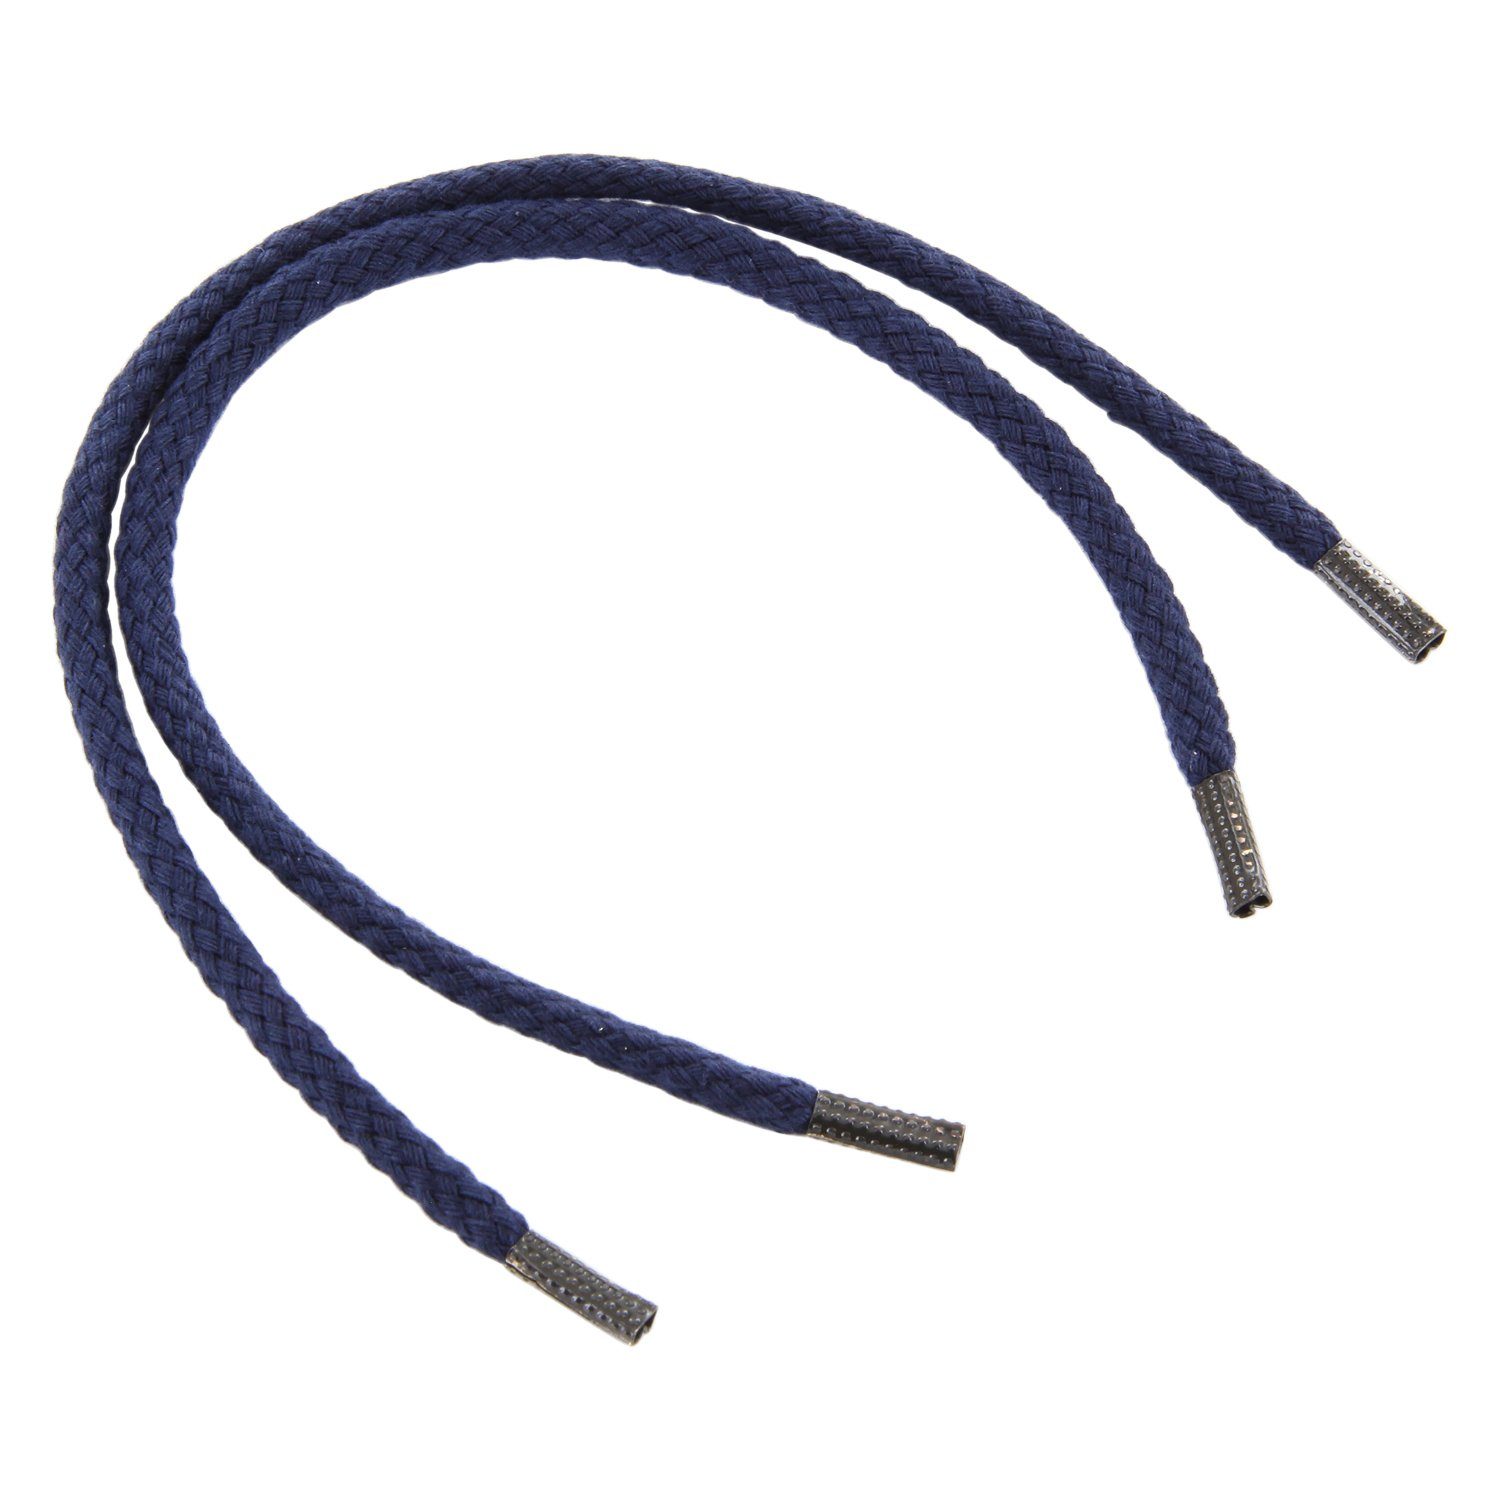 Rema Schnürsenkel Rema Schnürsenkel Marineblau - rund - ca. 3 mm breit für Sie nach Wunschlänge geschnitten und mit Metallenden versehen